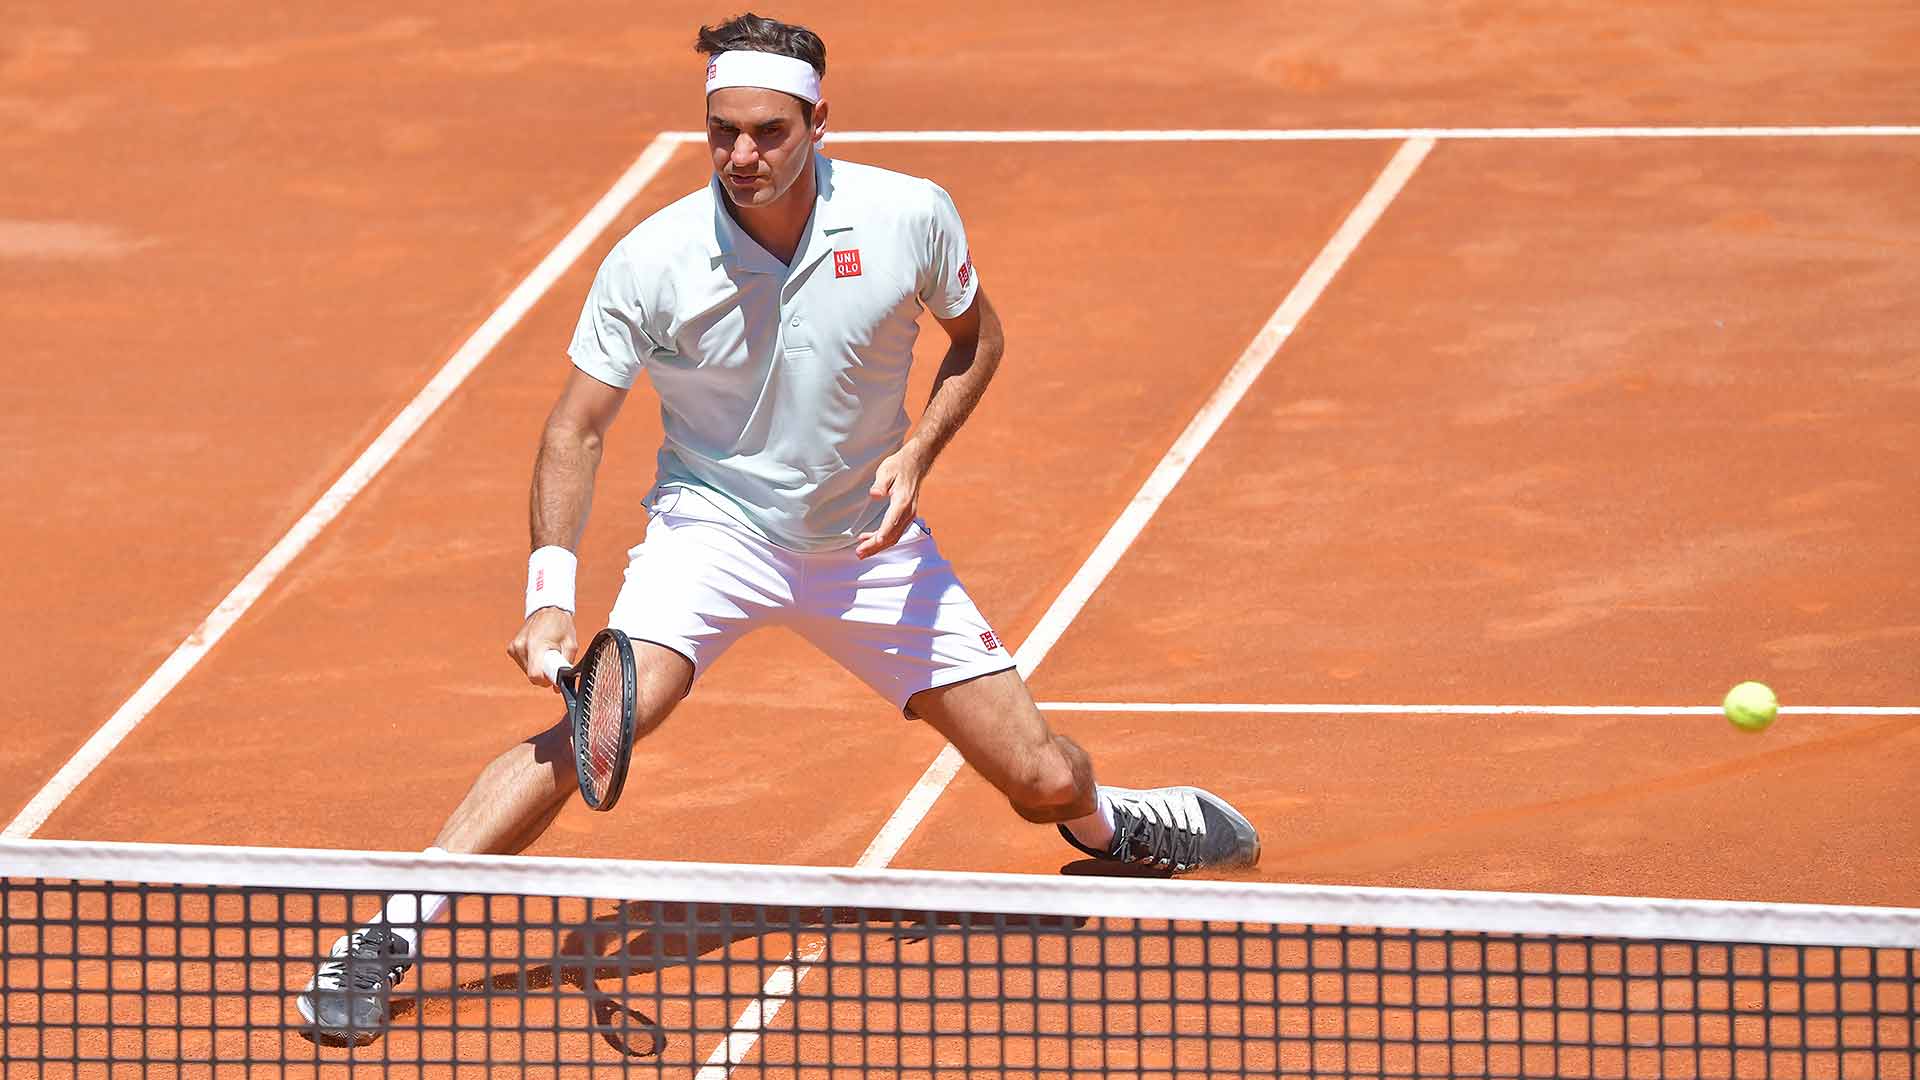 Tênis: De volta a Roland Garros, Federer estreia com vitória tranquila sobre italiano